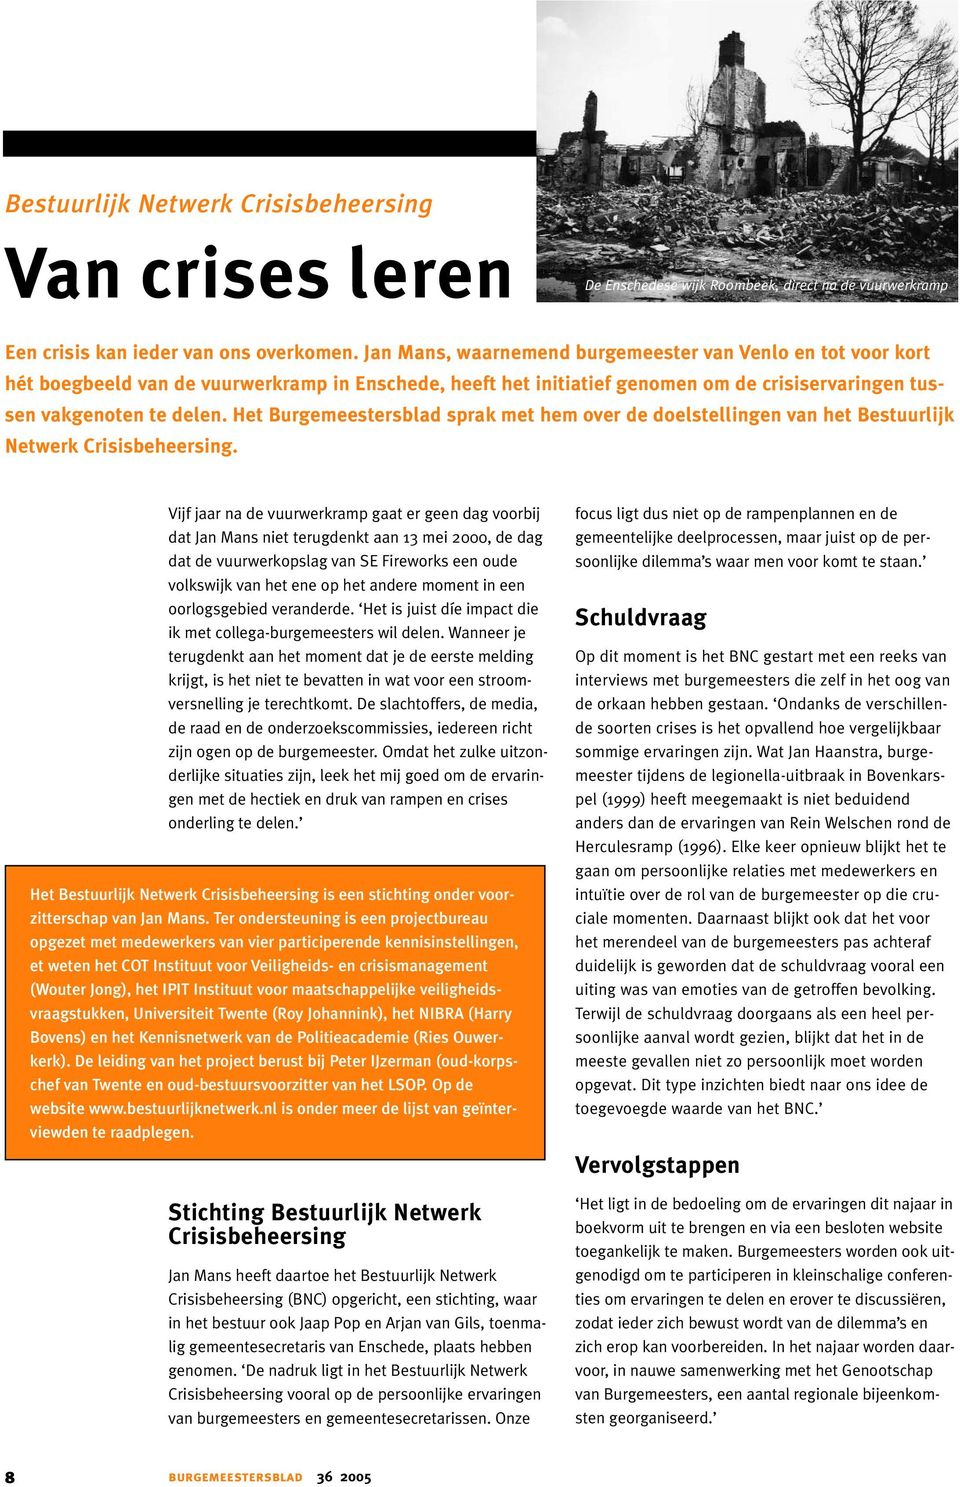 Het Burgemeestersblad sprak met hem over de doelstellingen van het Bestuurlijk Netwerk Crisisbeheersing.